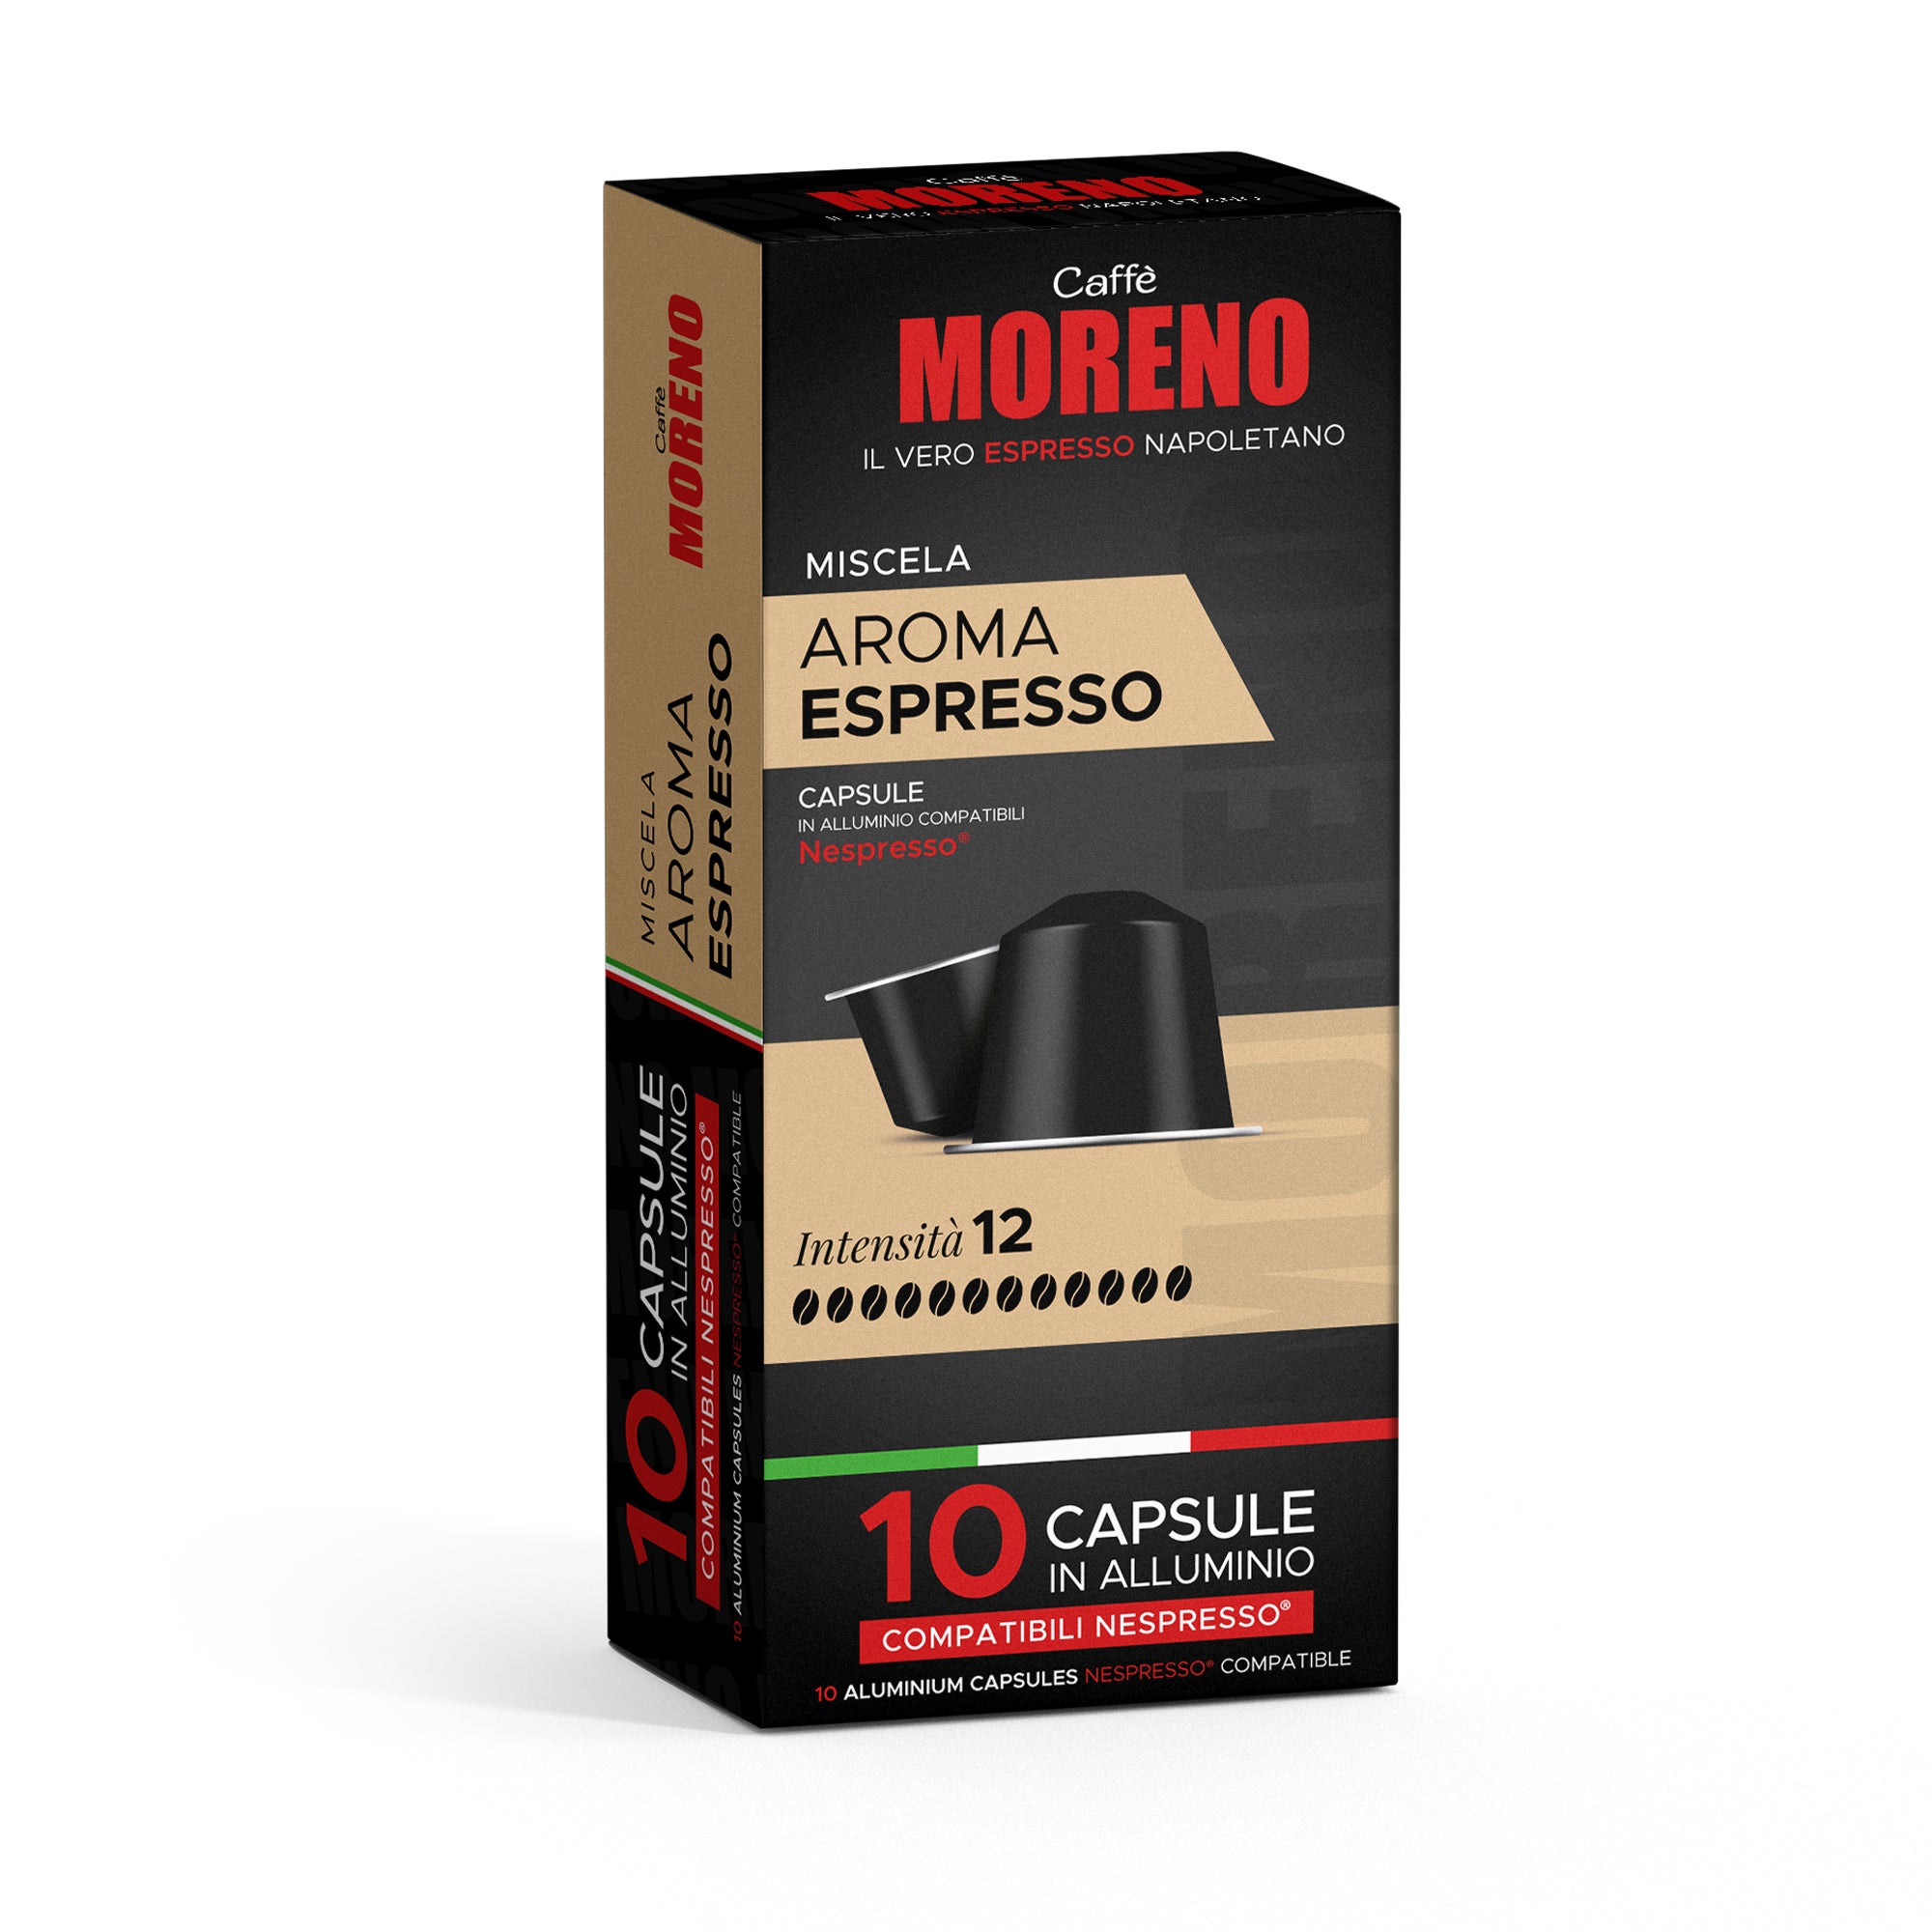 Capsule compatibili Nespresso® in Alluminio - Caffè Moreno